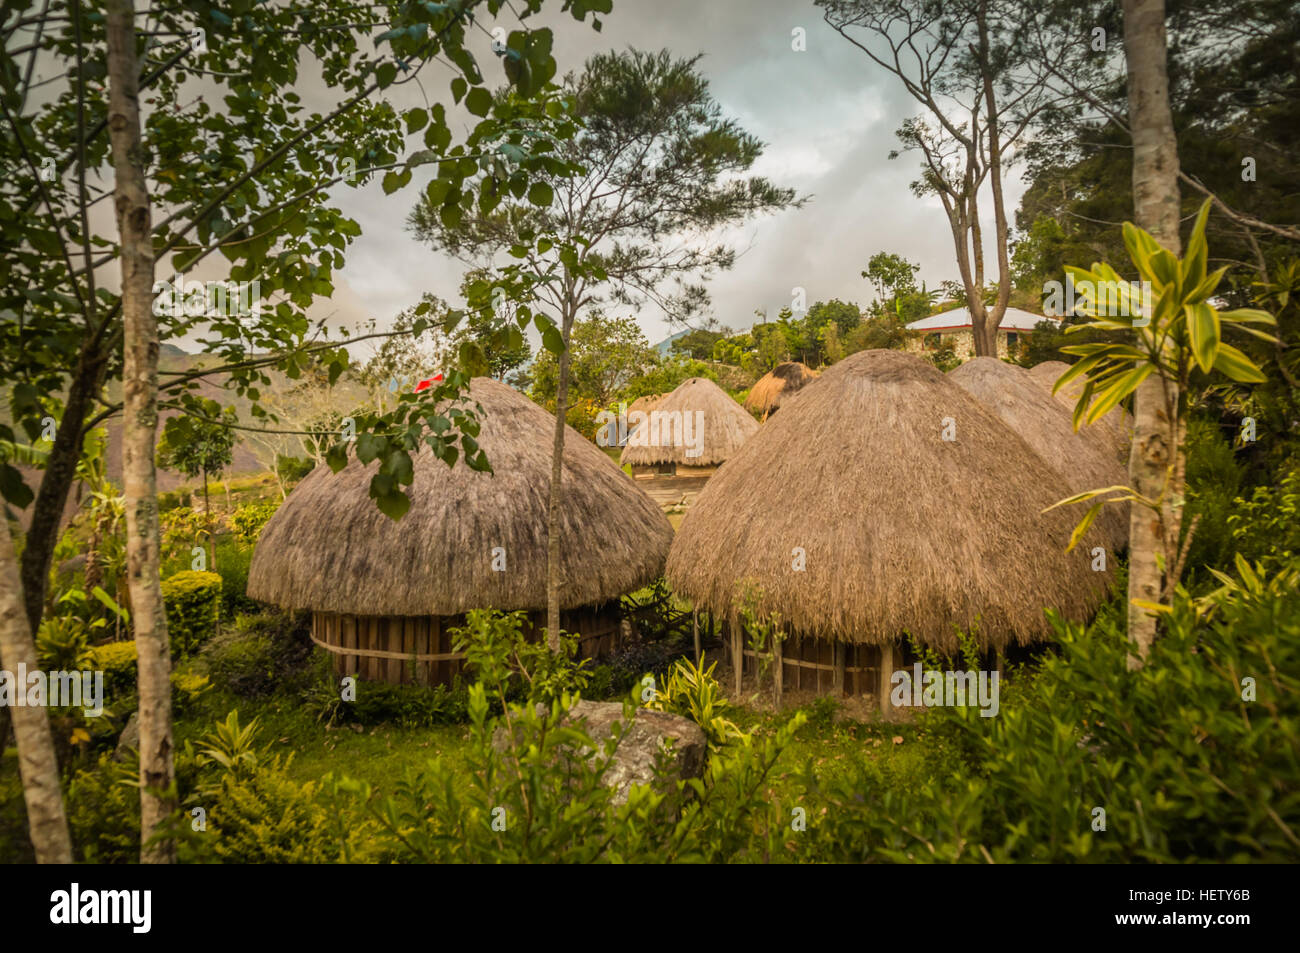 Traditionelle Häuser mit Stroh Dächer im Dorf in Dani Schaltung in der Nähe von Wamena, Papua, Indonesien. Stockfoto